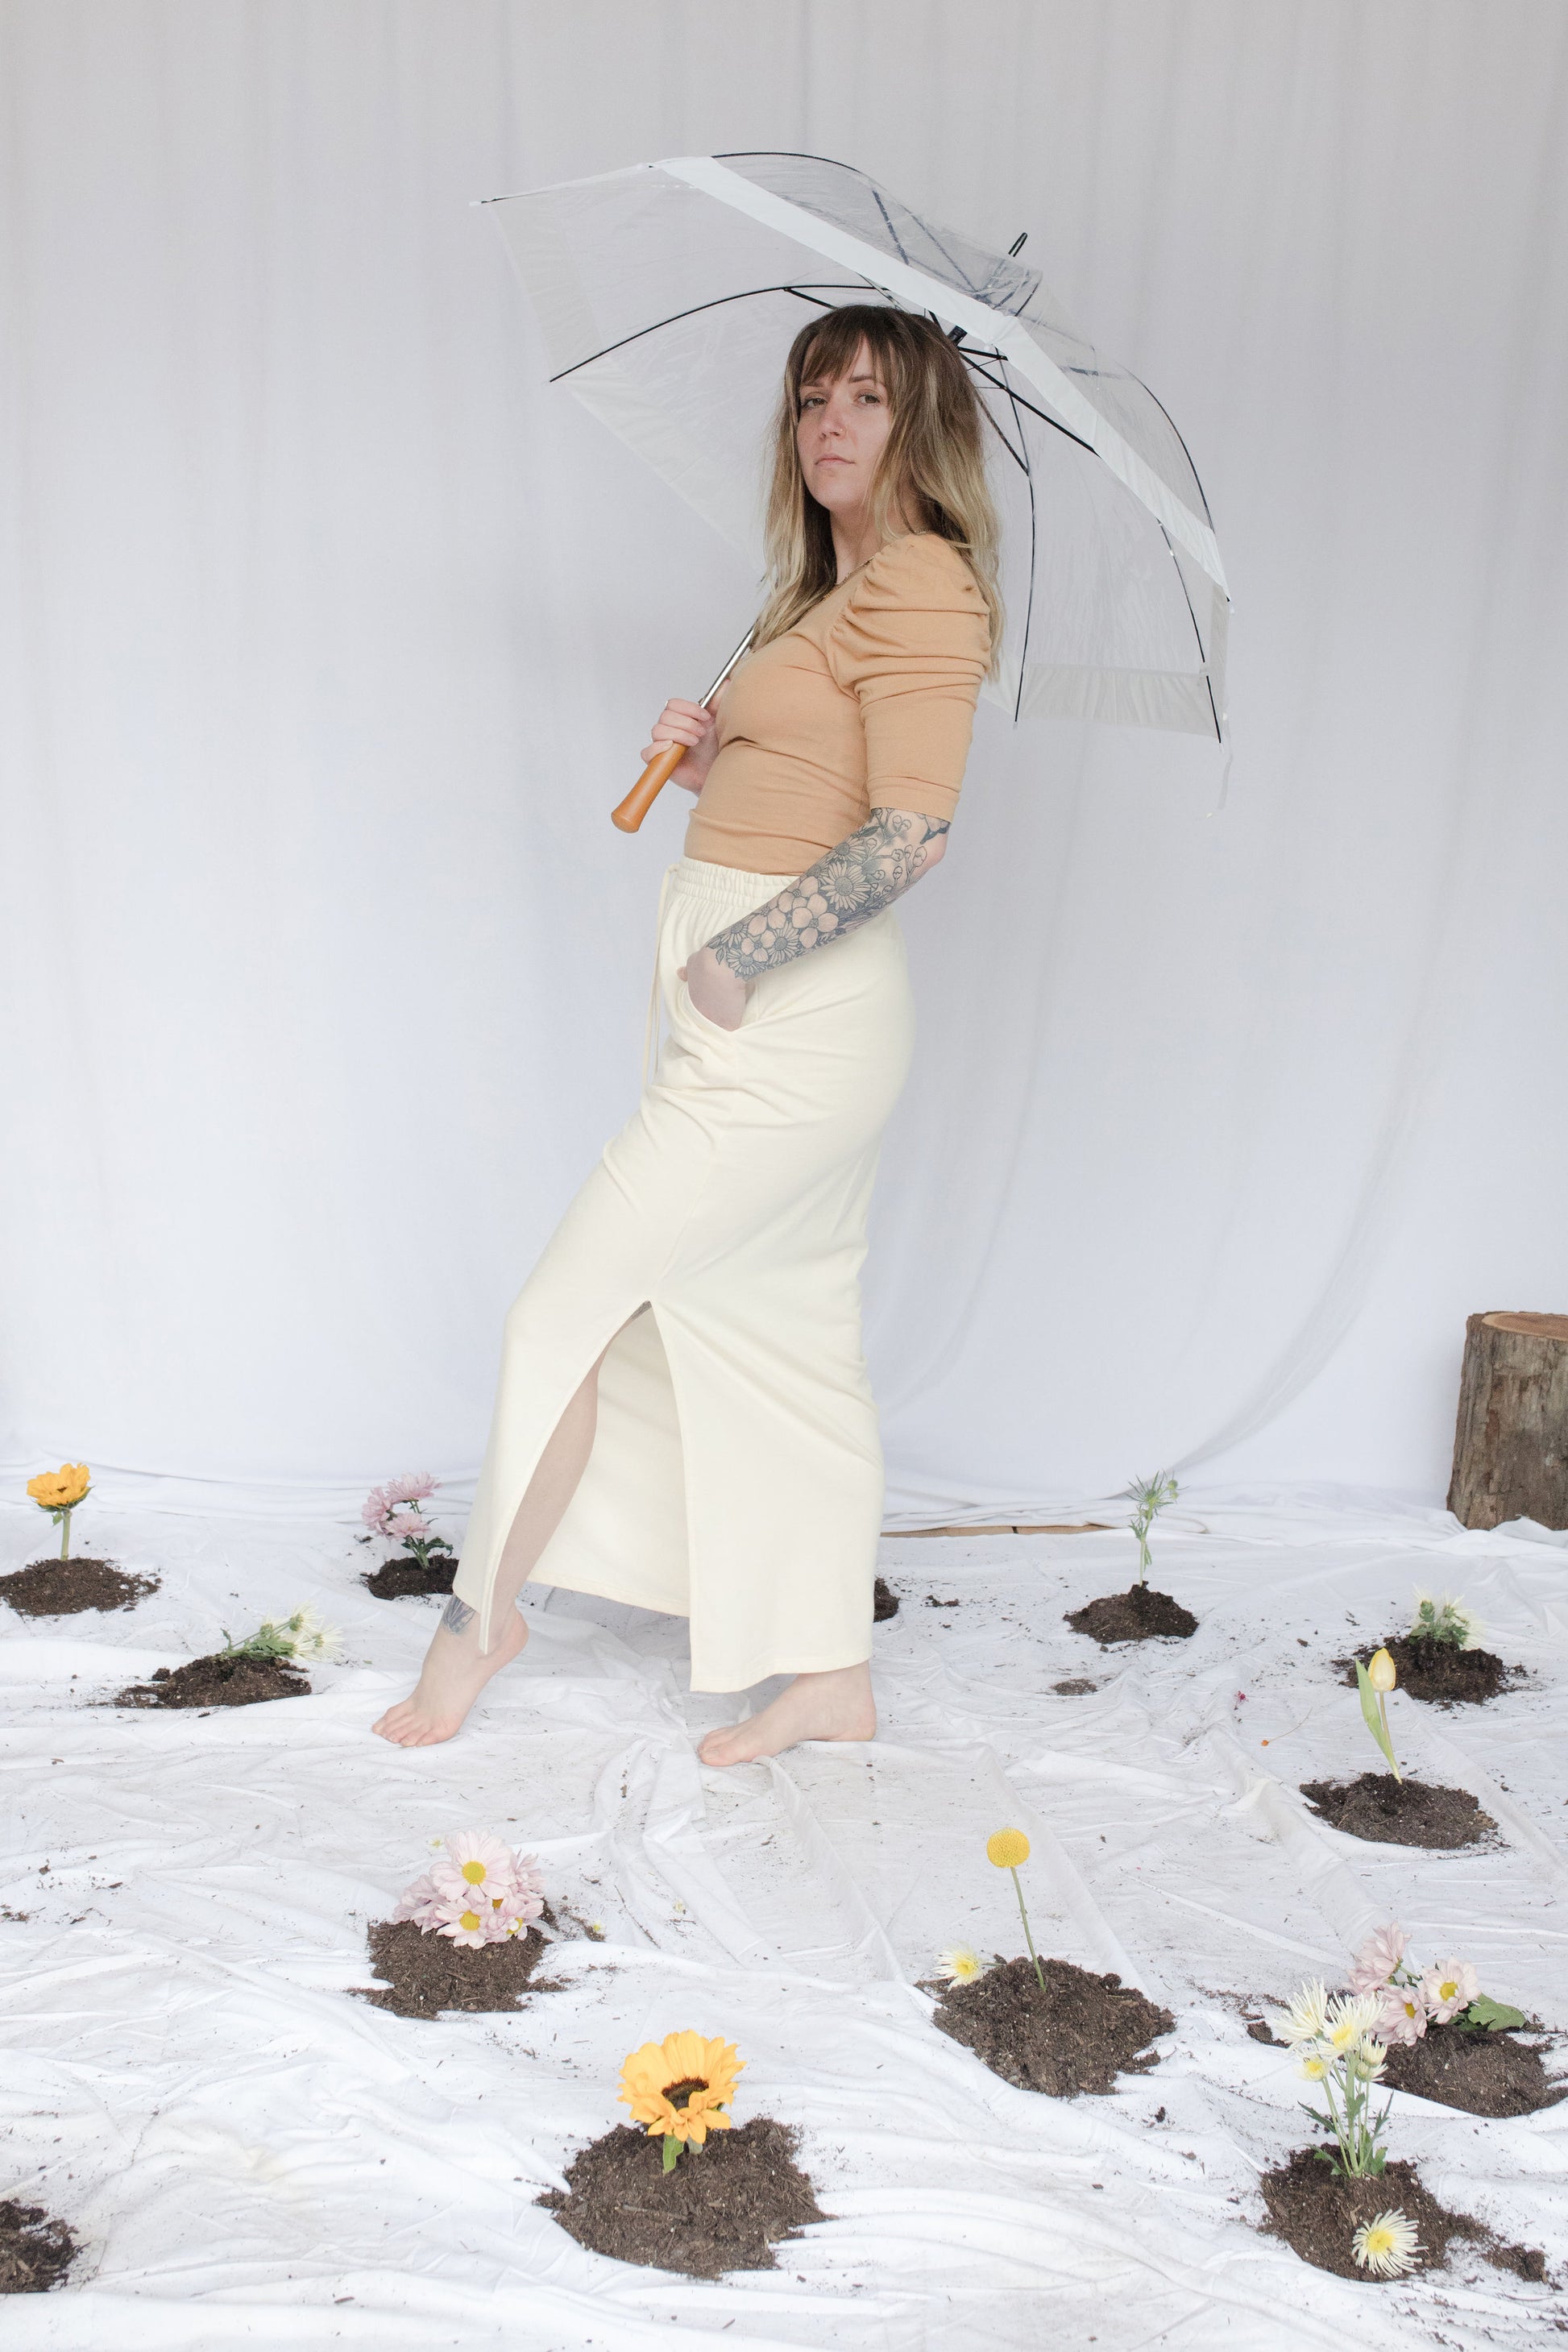 Image of model in skirt holding umbrella